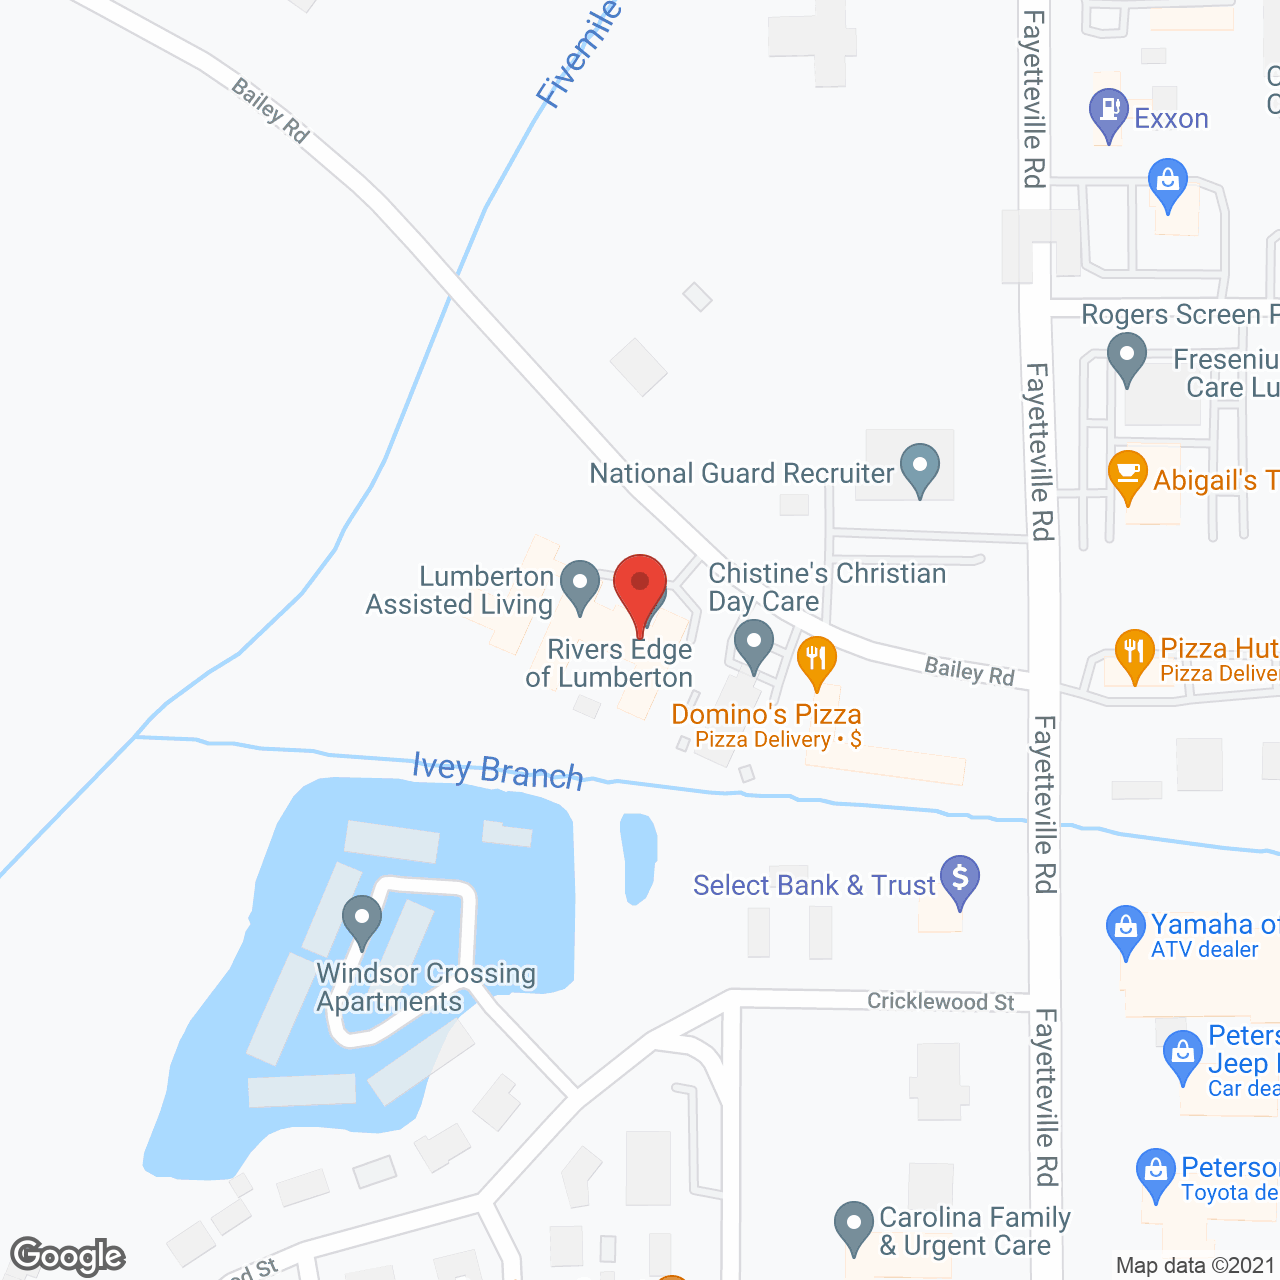 Rivers Edge of Lumberton in google map